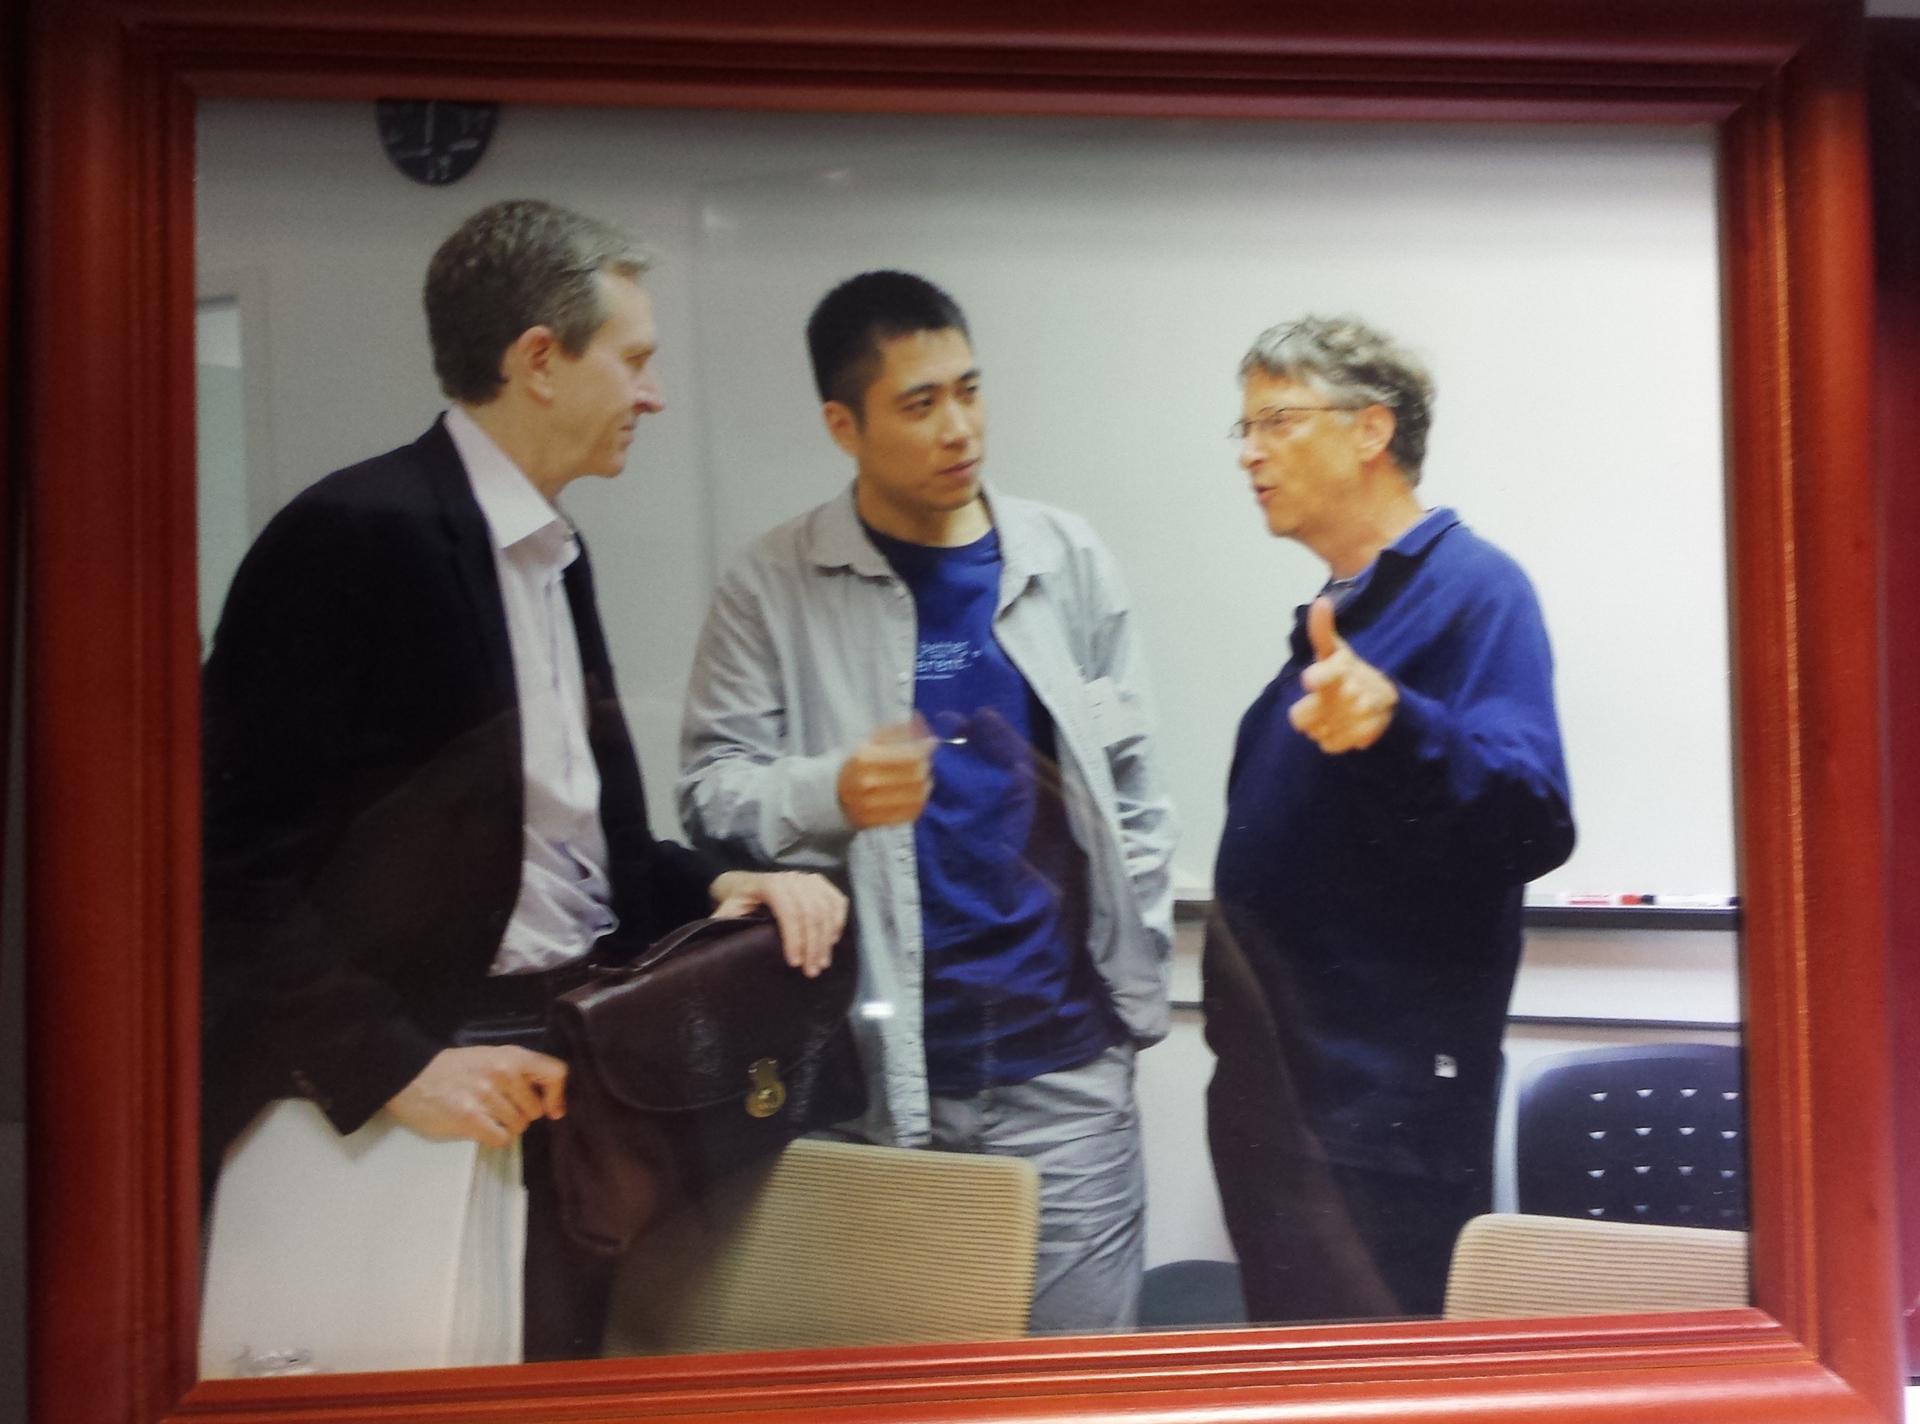 Wang Jun, former BGI Chief Executive, with Bill Gates, in photo displayed at BGI